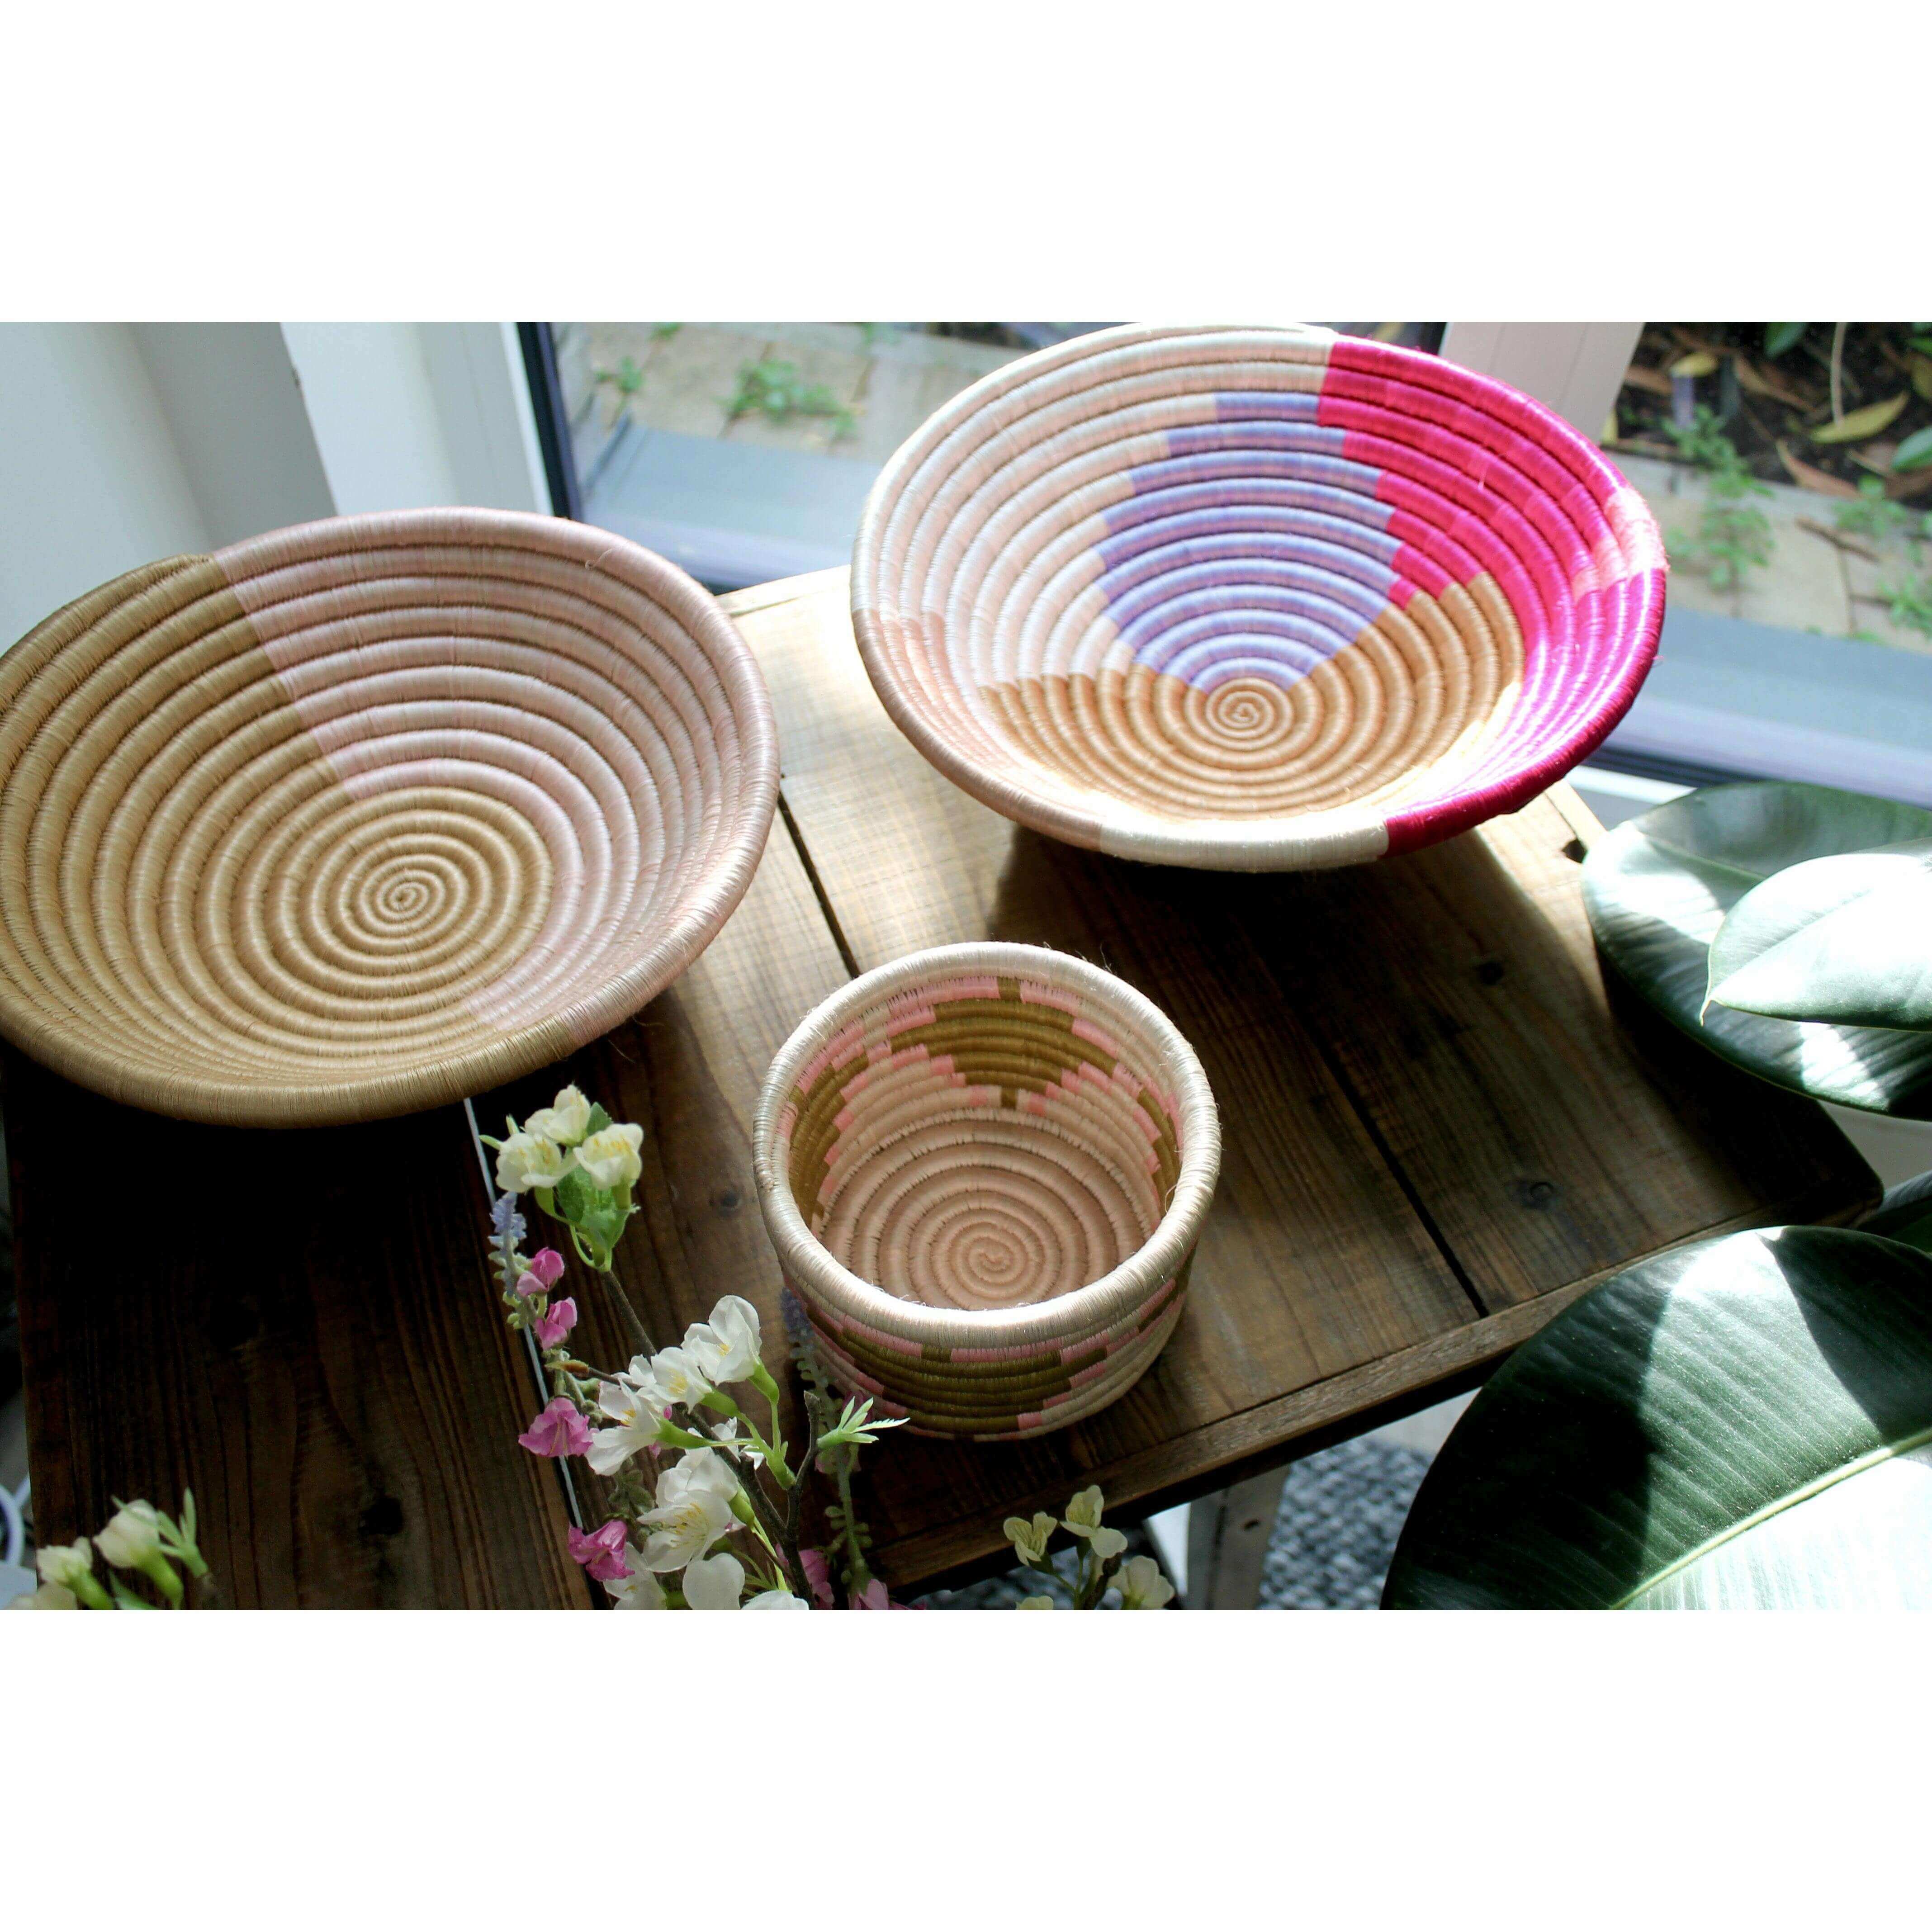 Seagrass woven basket bowls as home decor